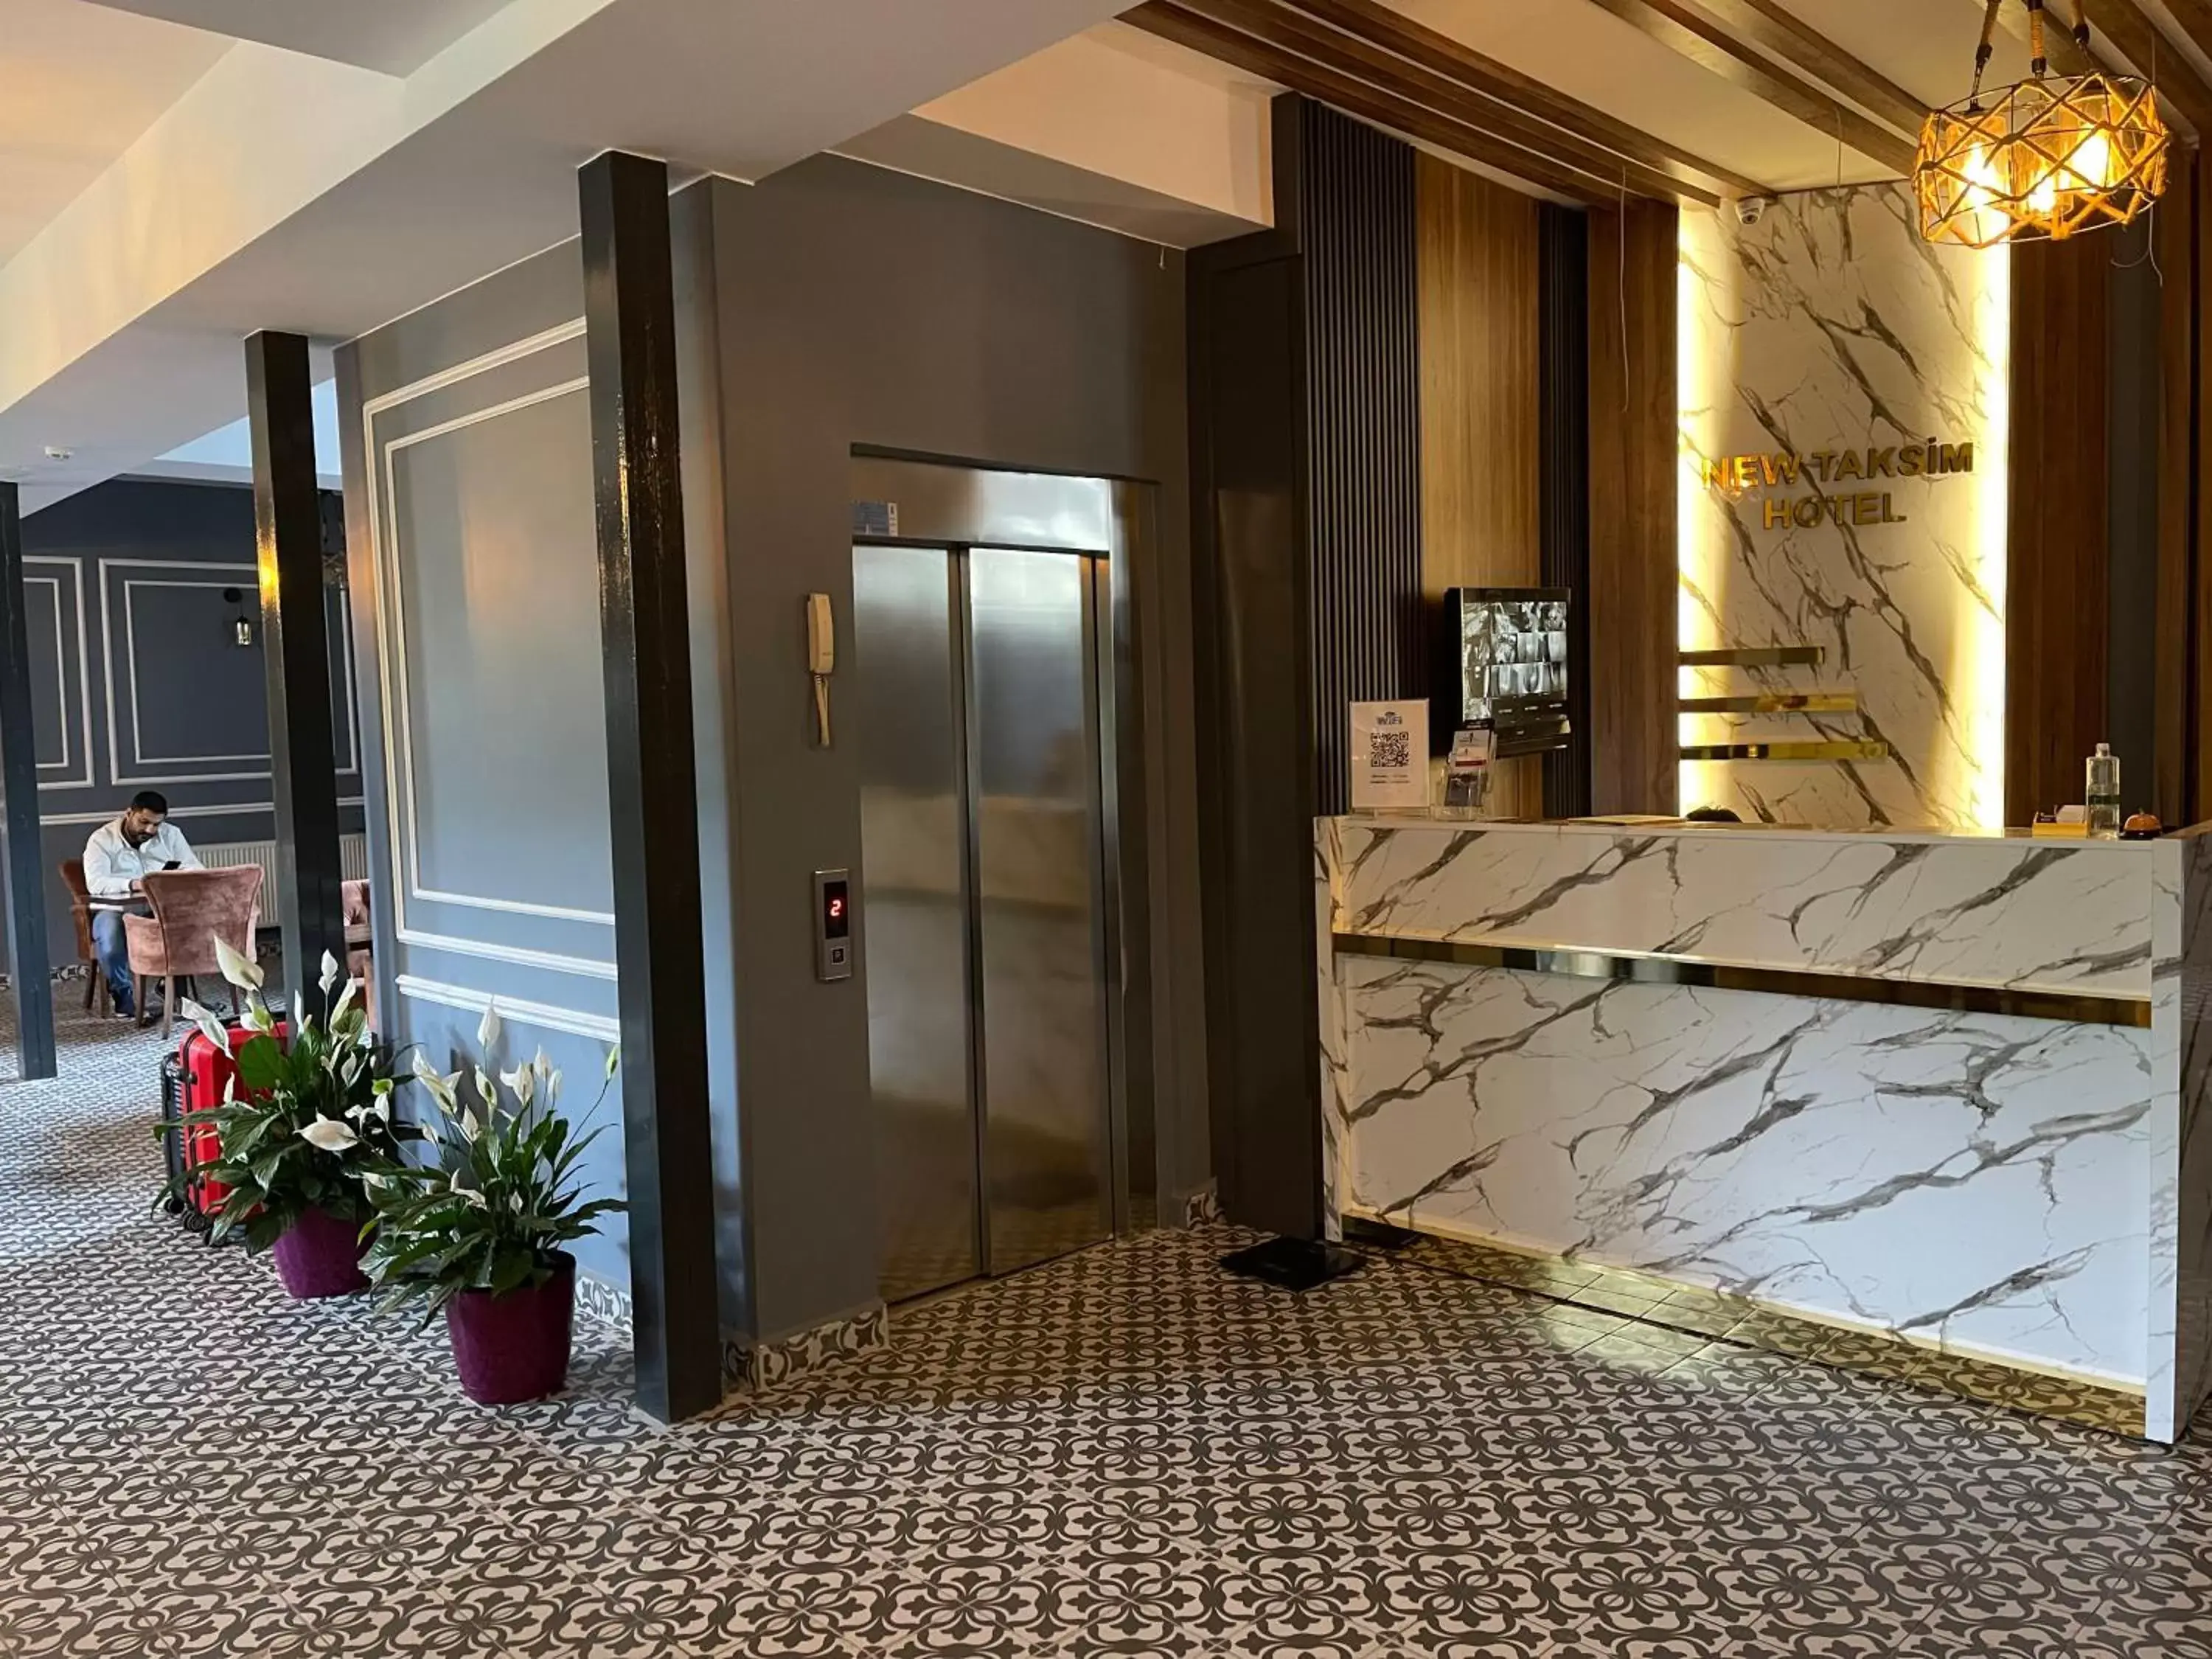 Lobby or reception, Bathroom in New Taksim Hotel